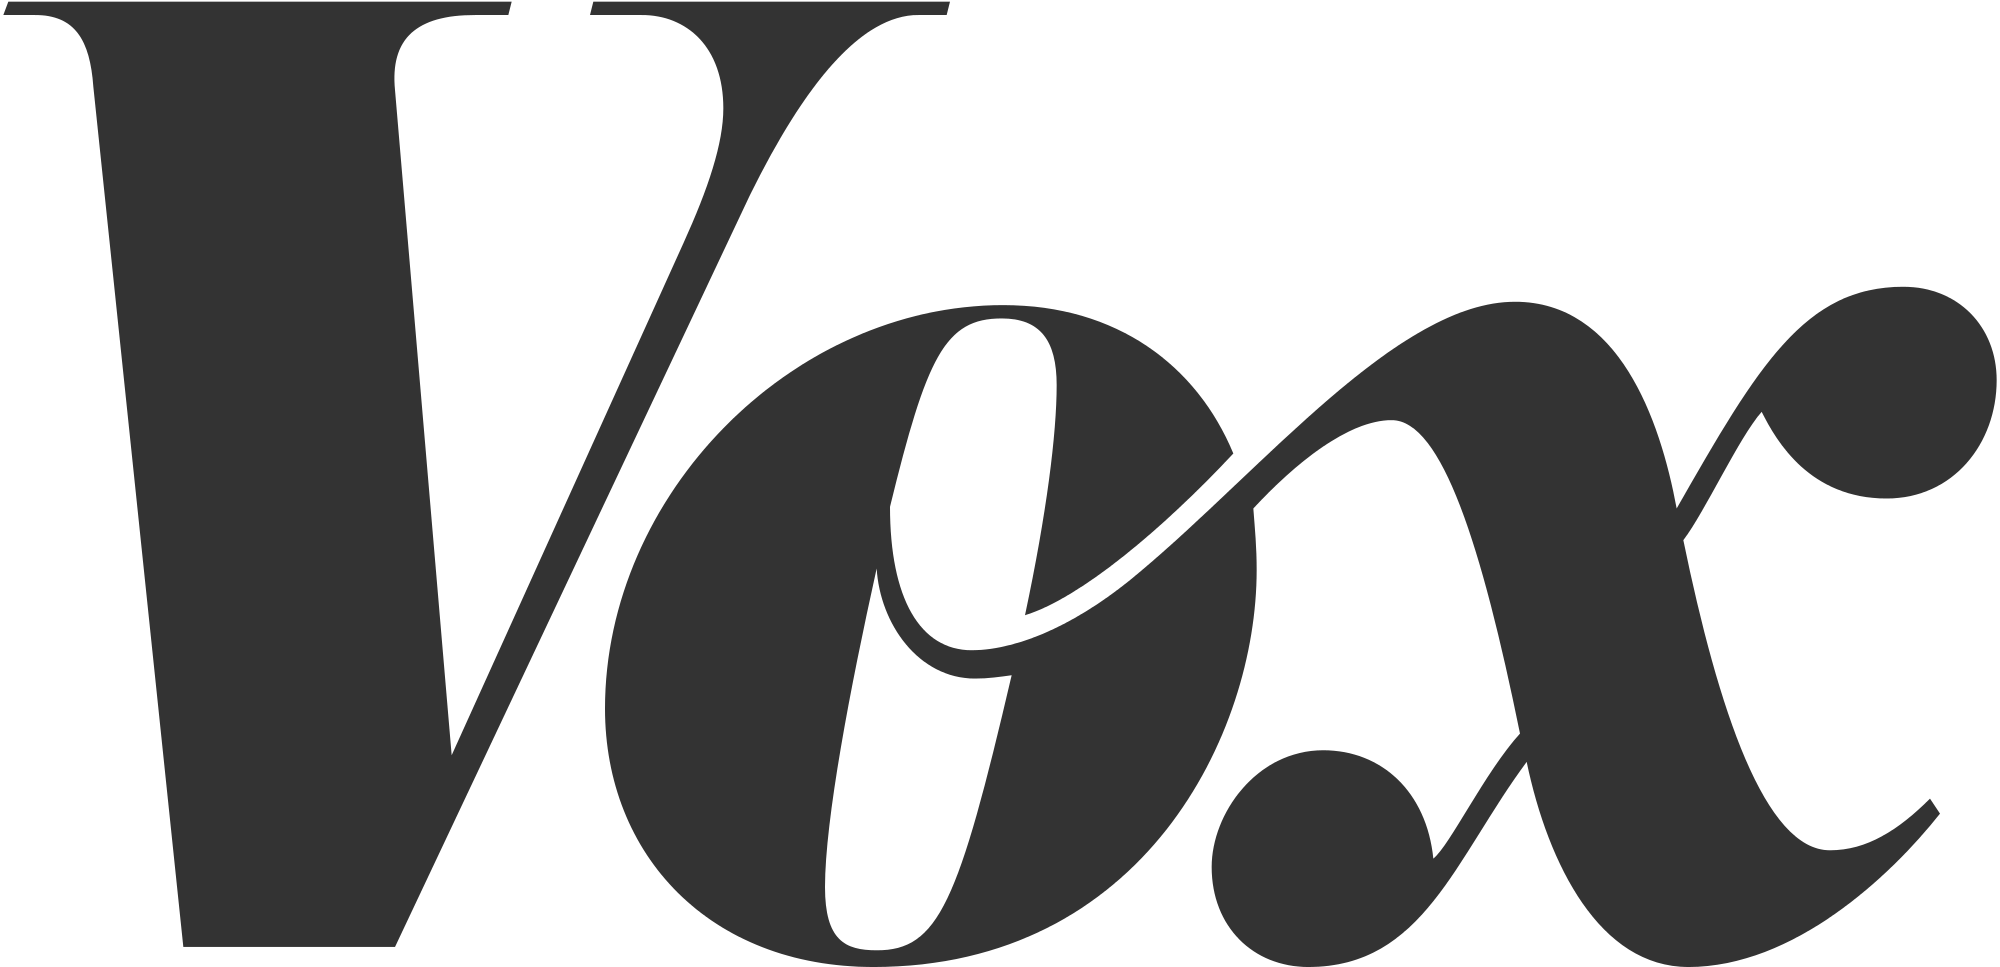 Vox_logo.svg.png